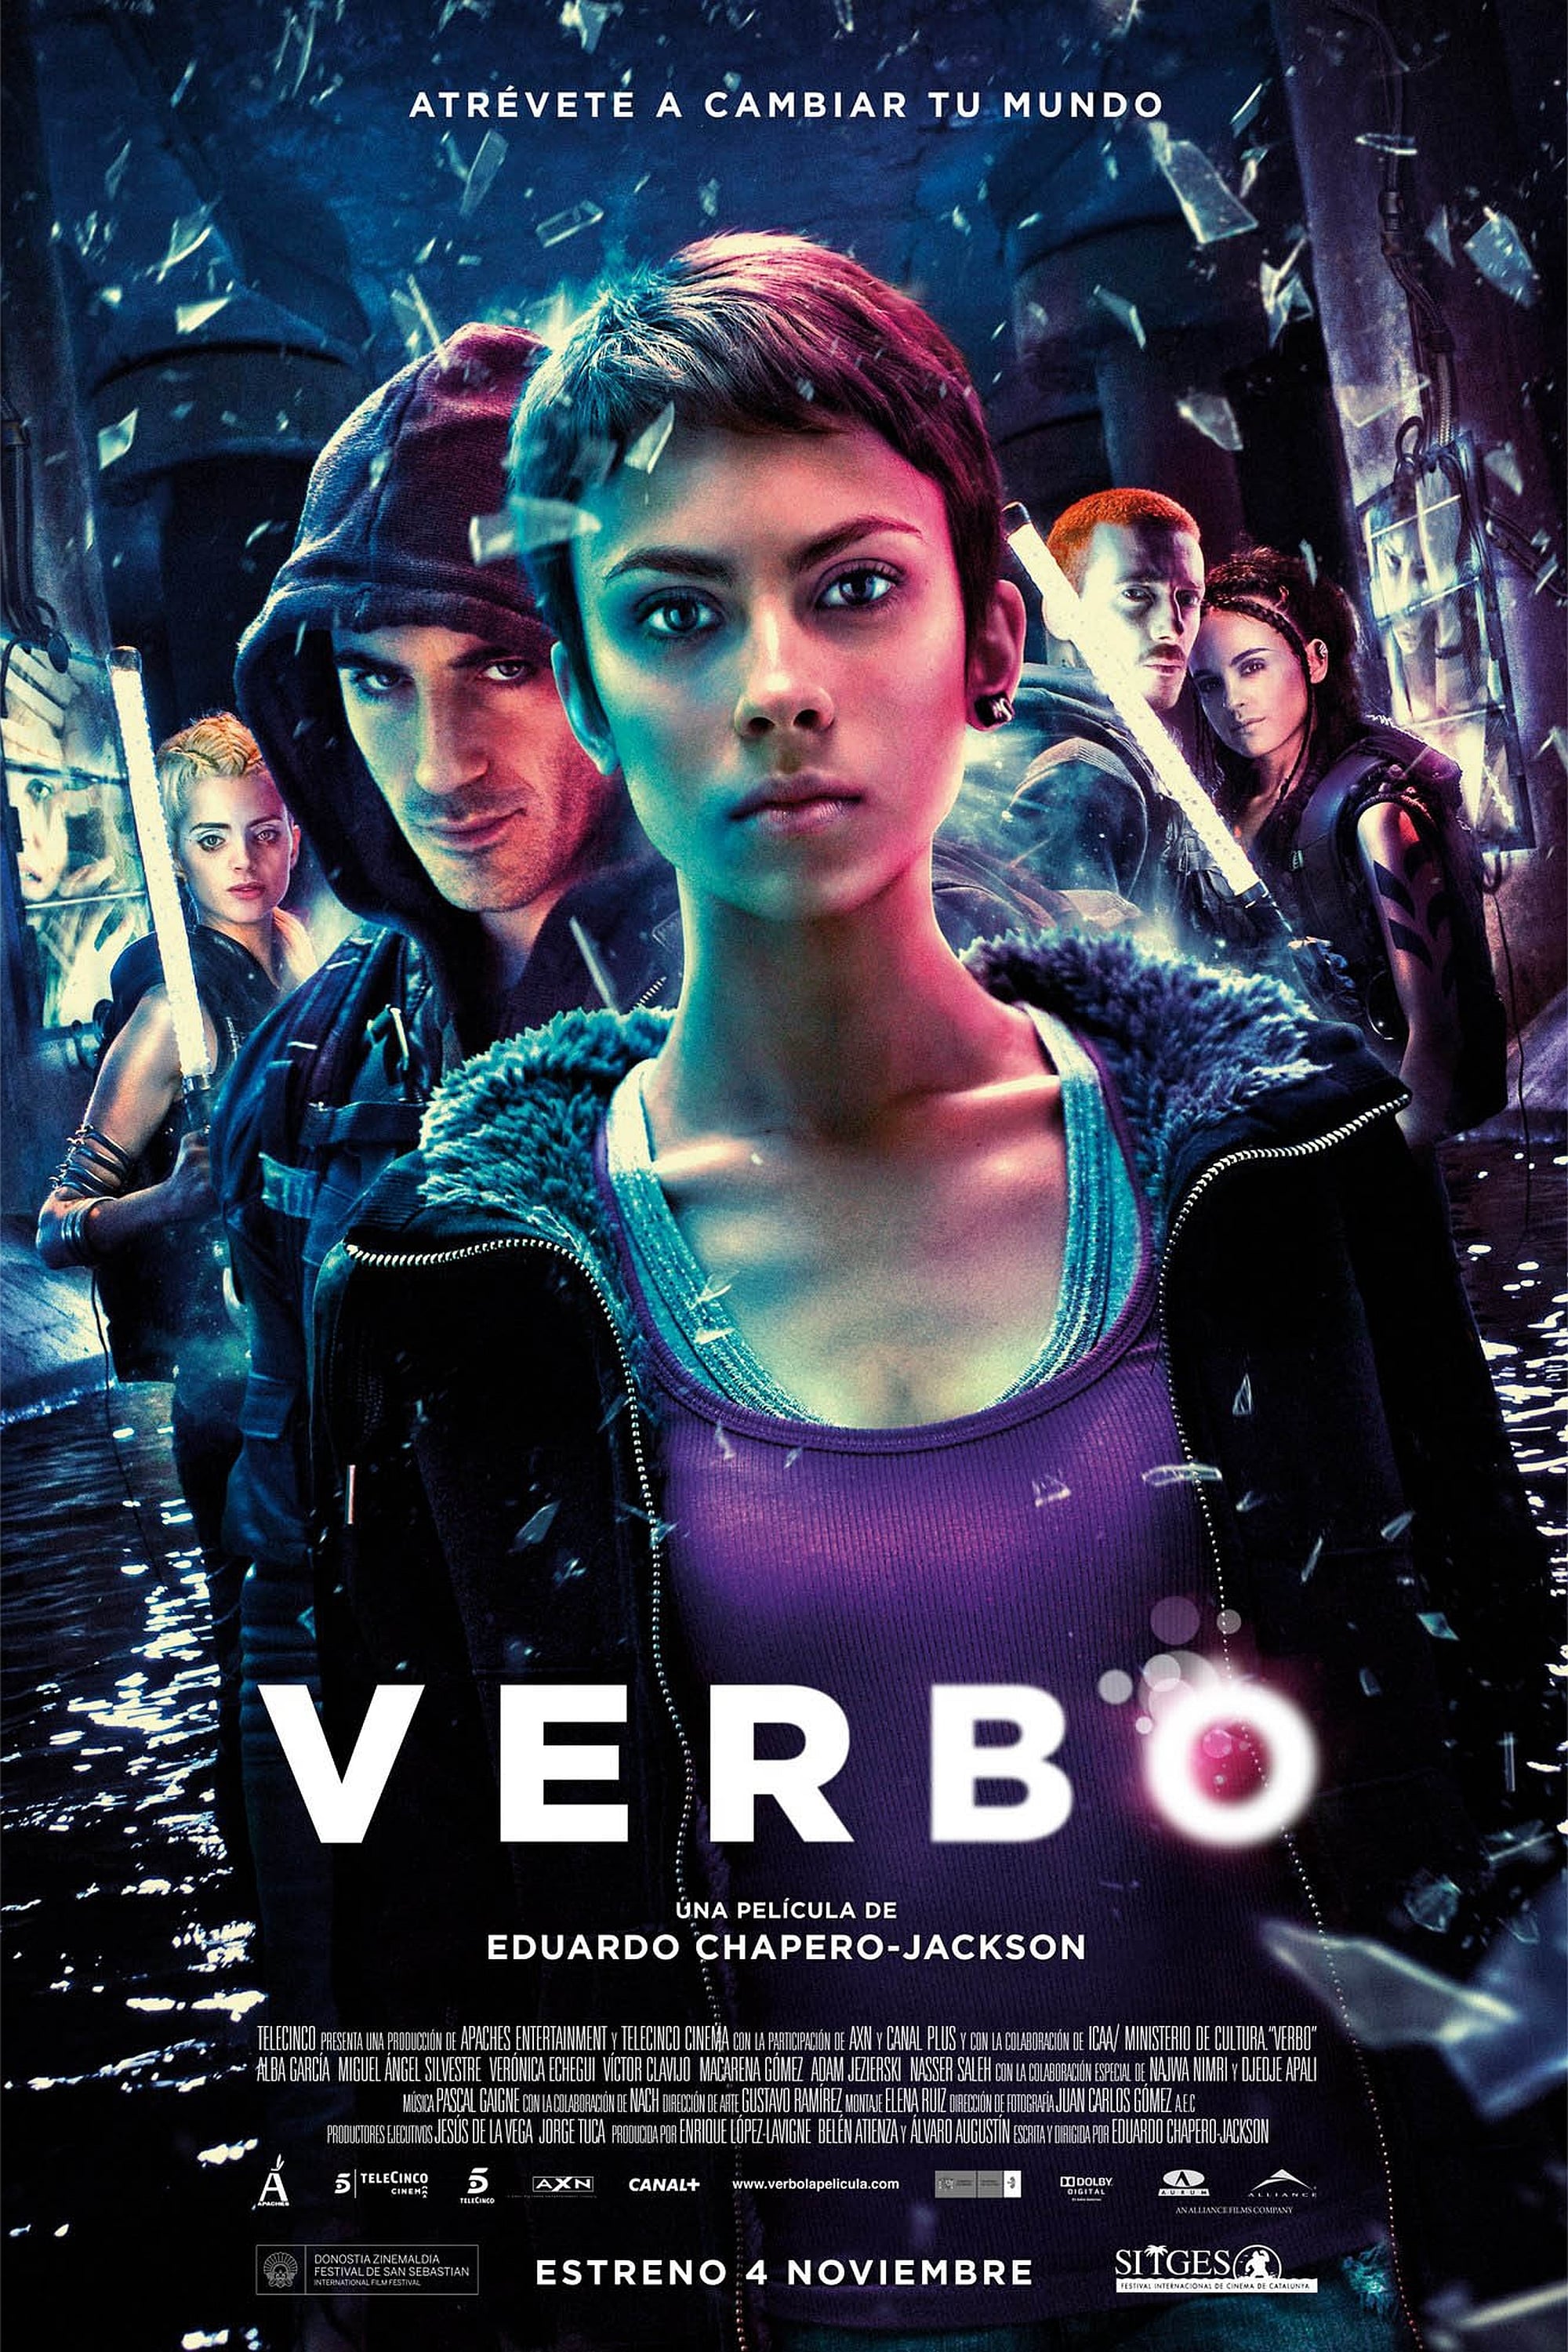 Verbo (2011)